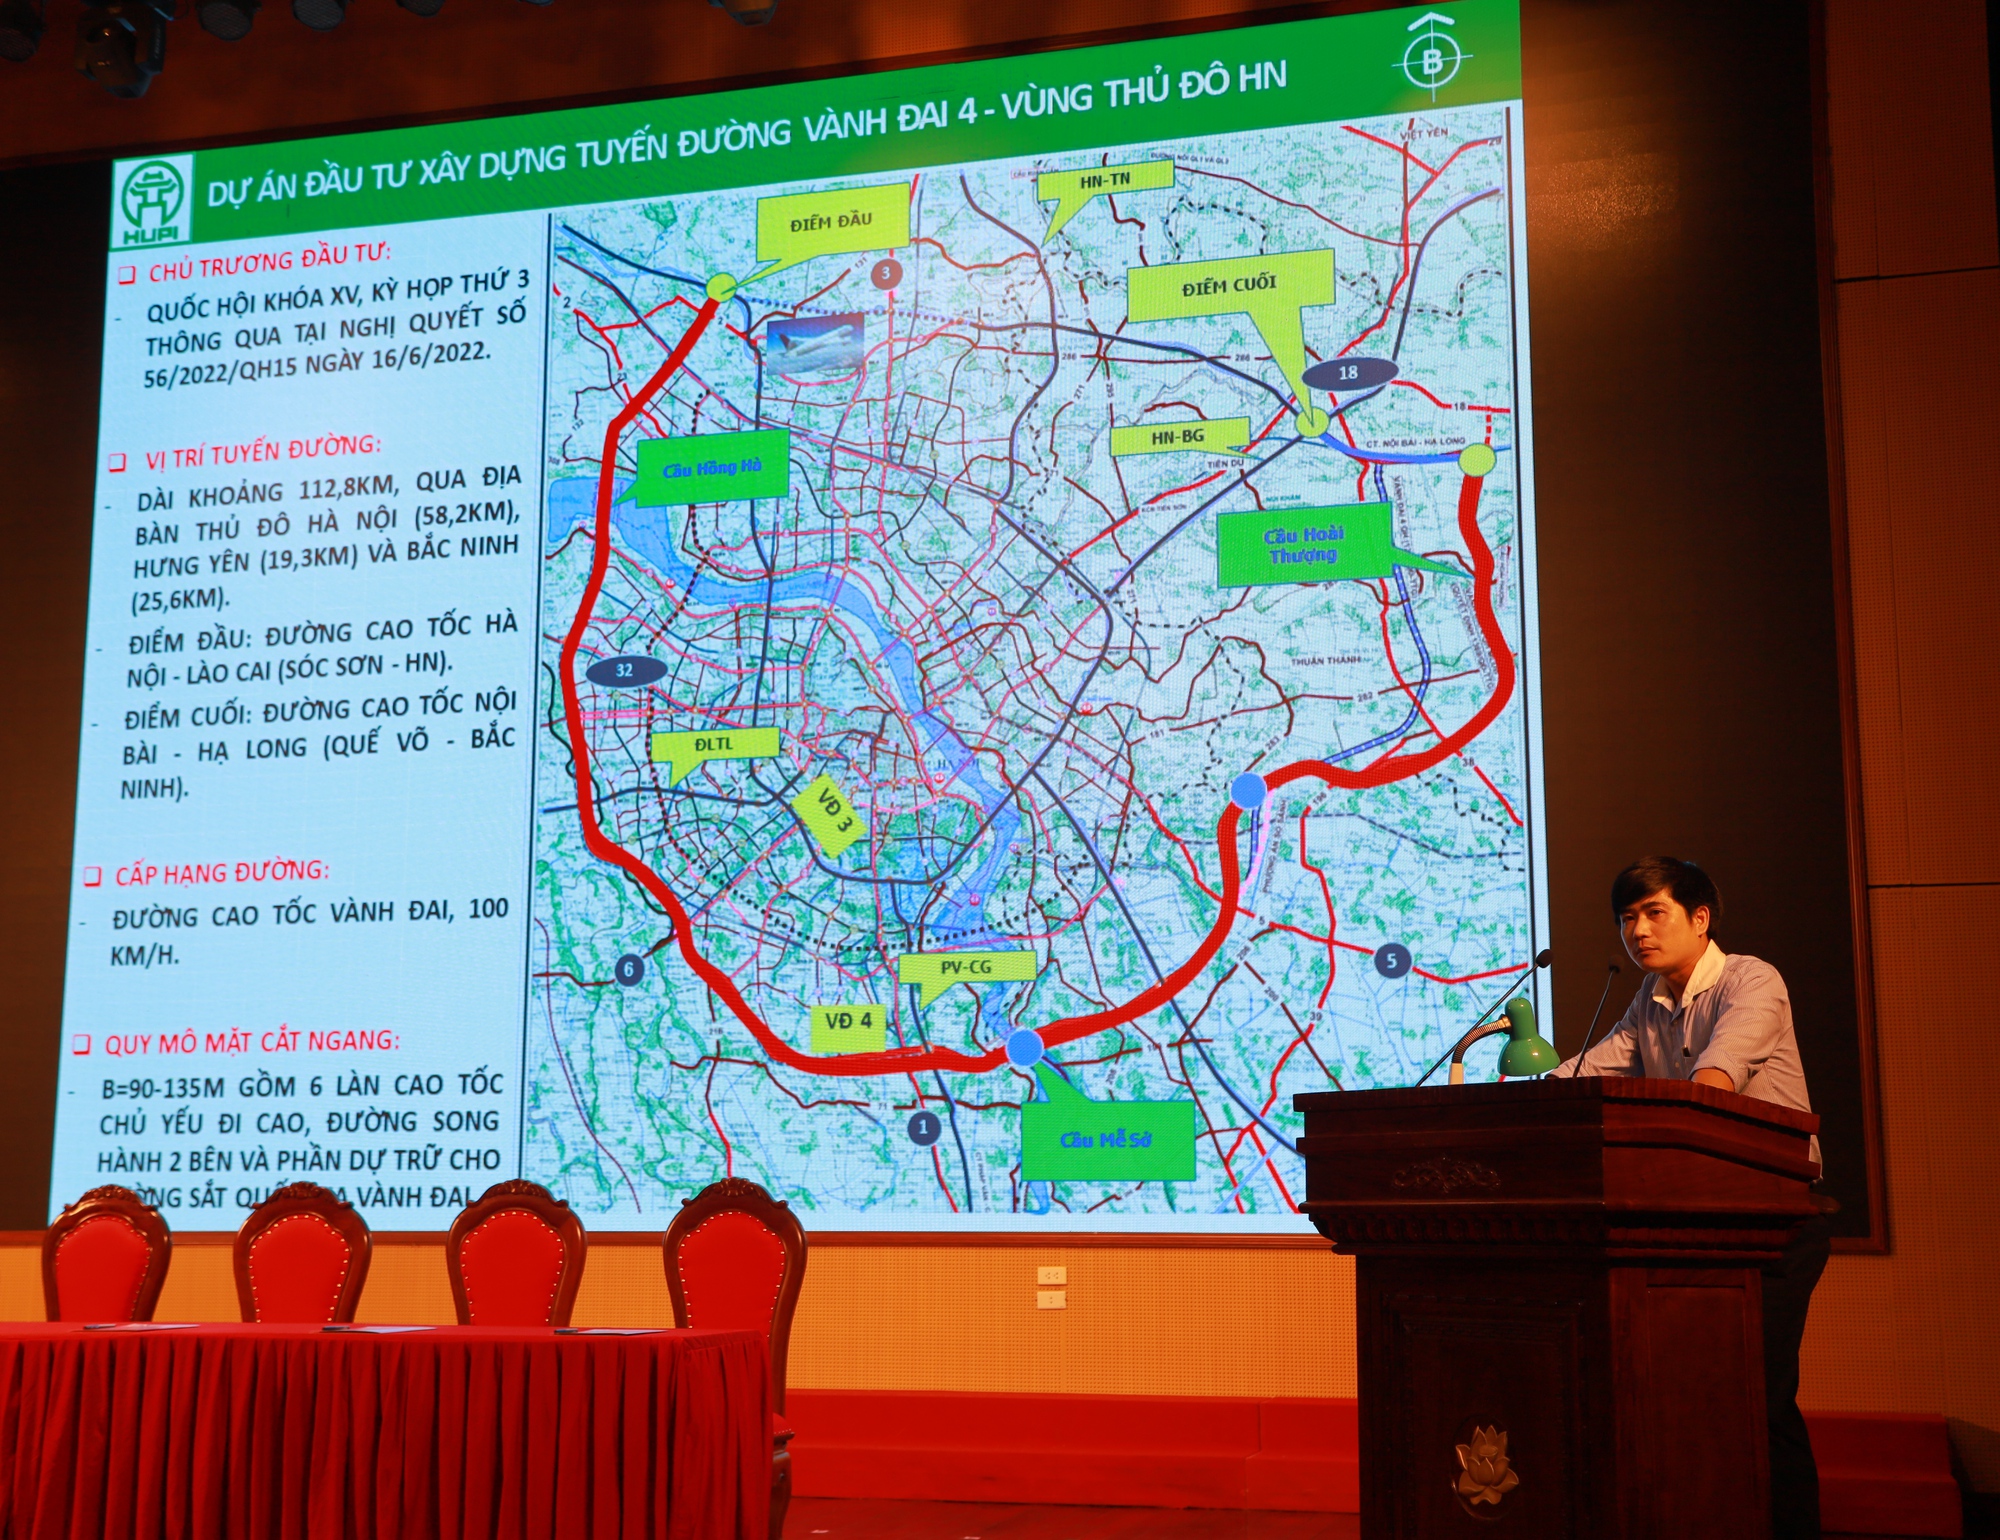 Đường Vành Đai 4: Đường Vành Đai 4 - một trong những tuyến đường quan trọng nhất của khu vực phía Nam Hà Nội, đã hoàn thiện và đưa vào sử dụng. Bên cạnh việc giảm thiểu ùn tắc giao thông, tuyến đường này còn mang lại nhiều tiềm năng phát triển kinh tế, thu hút đầu tư và nâng cao chất lượng cuộc sống cho cộng đồng.